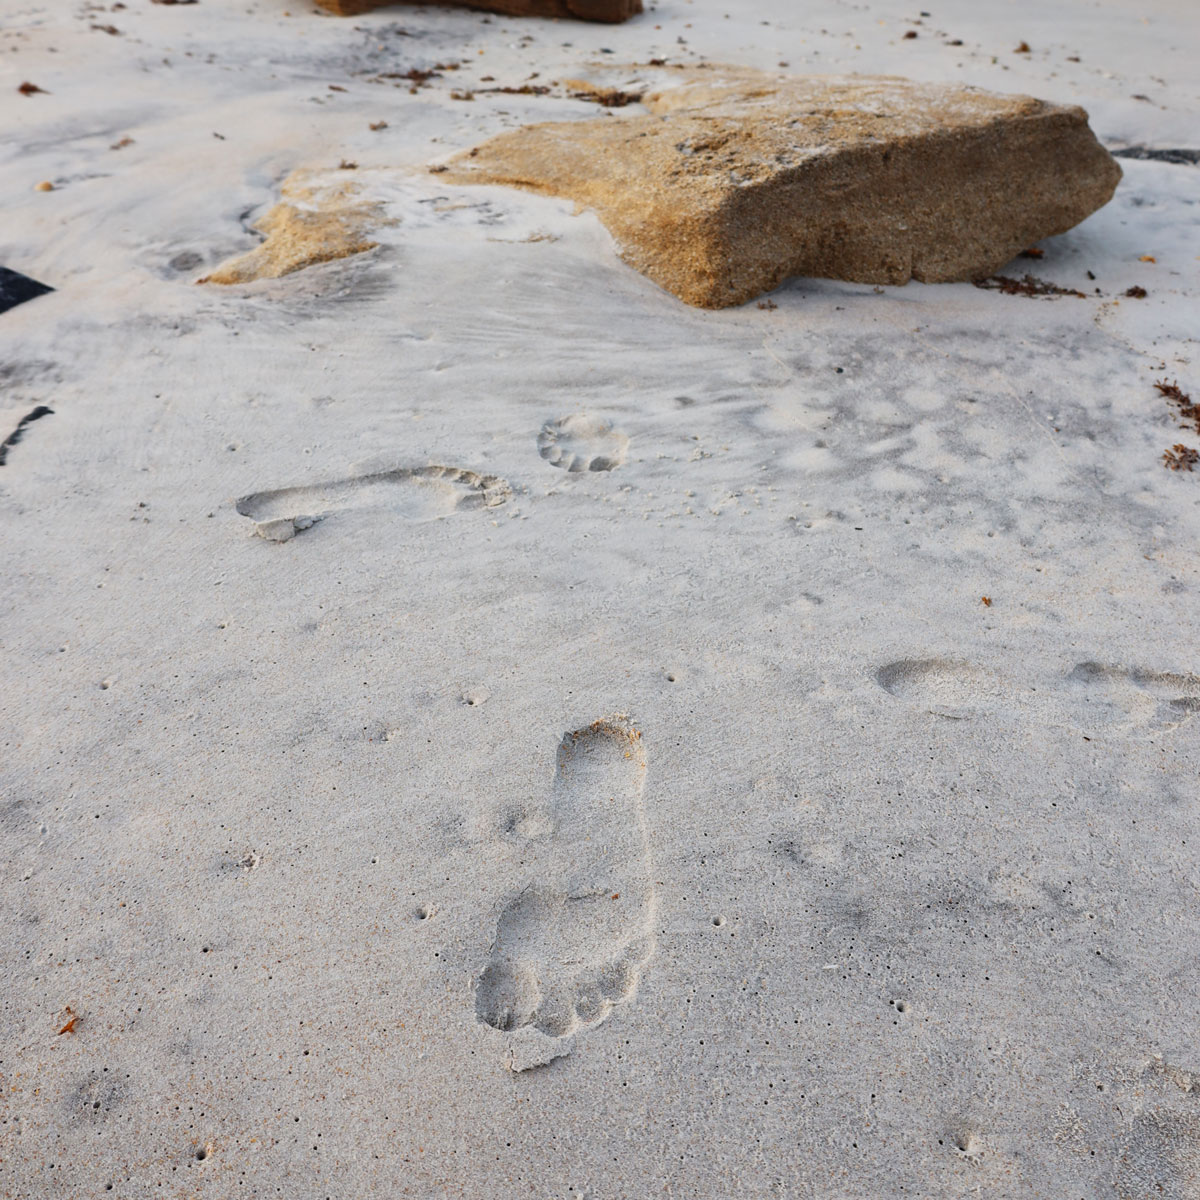 Footprint on a beach